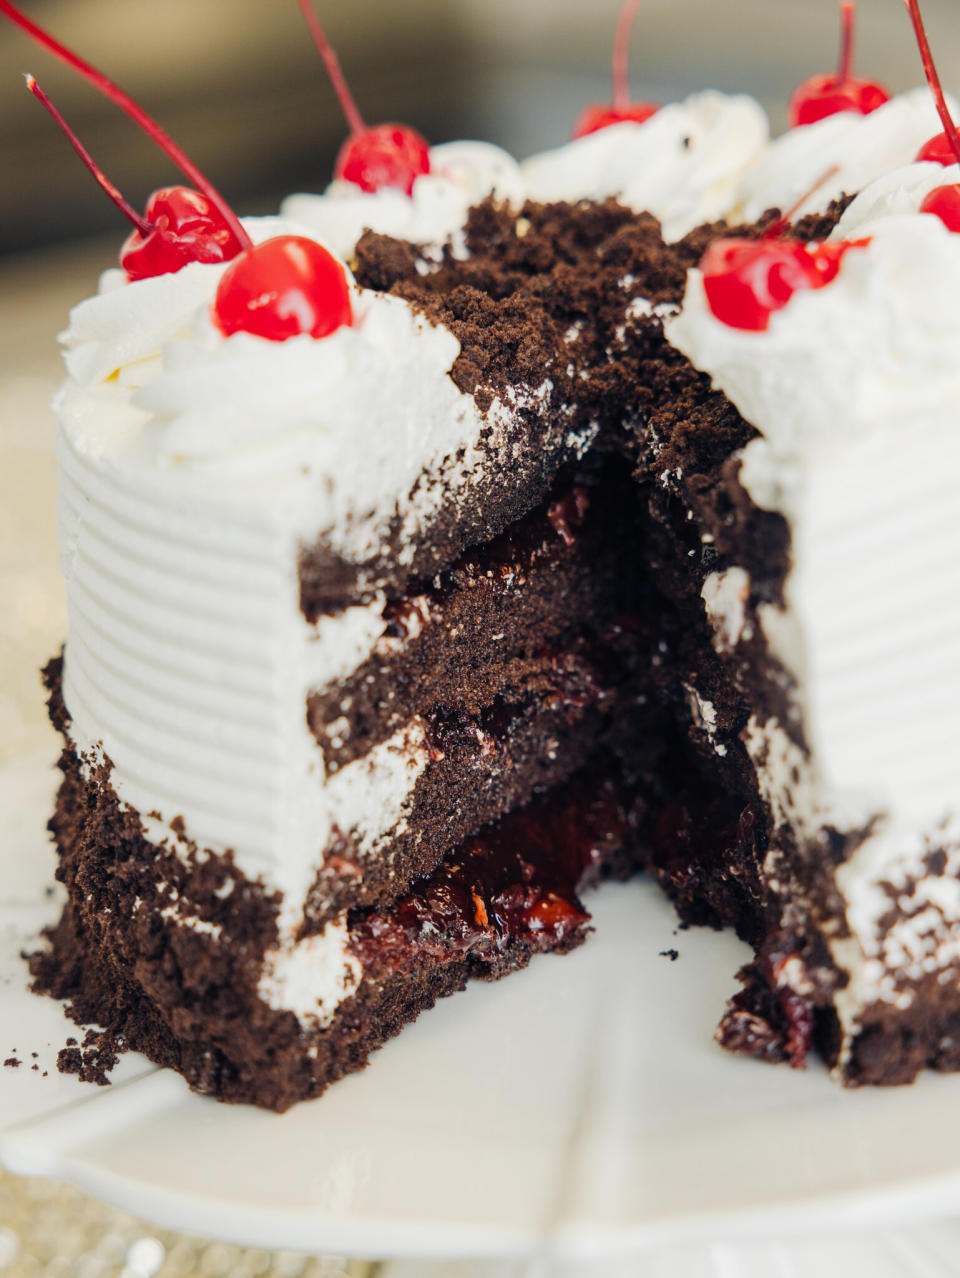 Natasha Laggan, quien dirige una cuenta de cocina trinitense en Instagram y YouTube, creía que el licor tradicional de la torta Selva Negra era el ron, como es común en Trinidad. (Alfonso Duran/The New York Times)